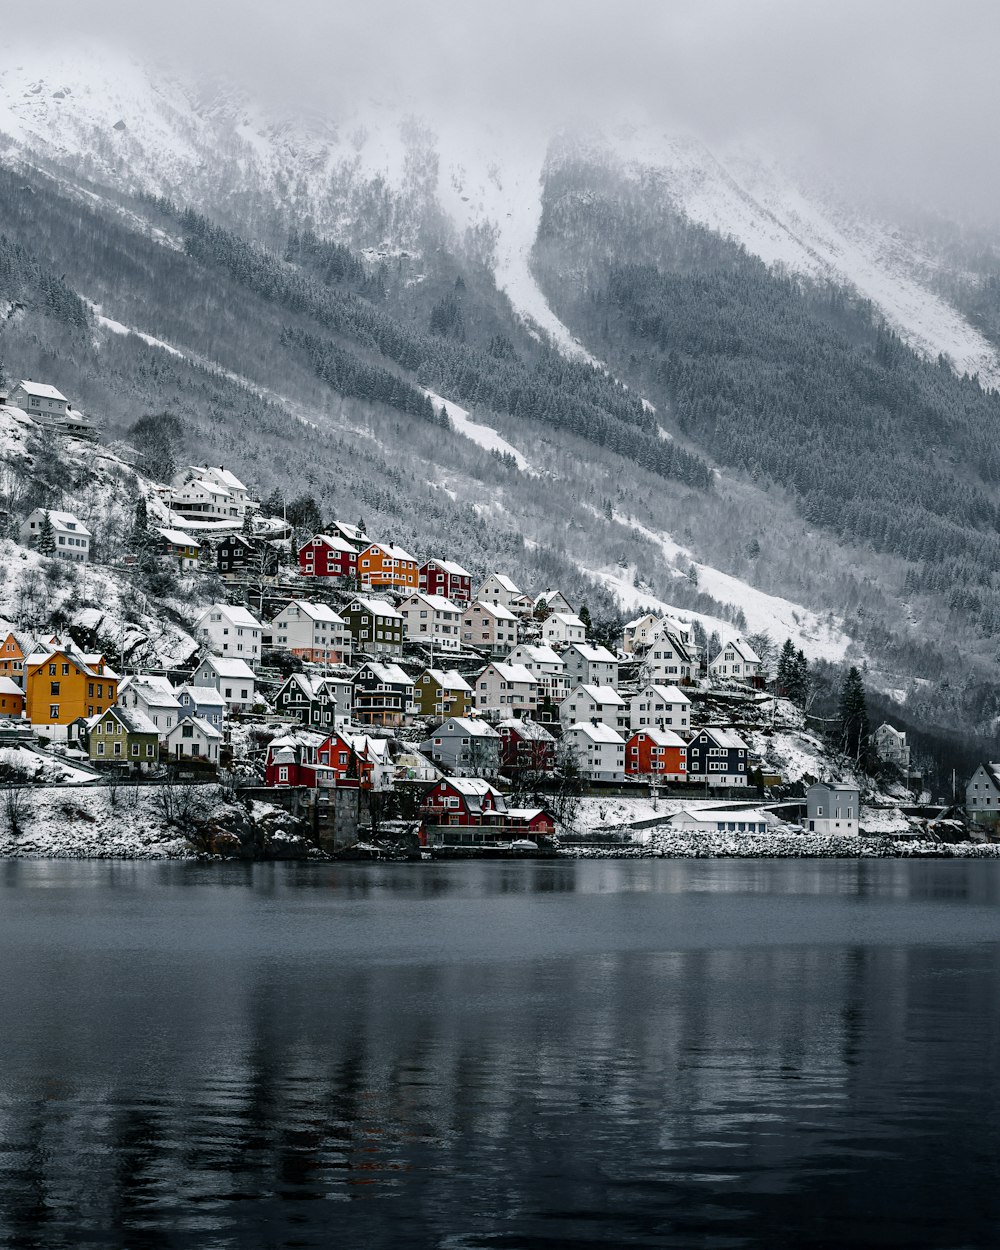 casas perto do corpo de água e da montanha coberta de neve durante o dia